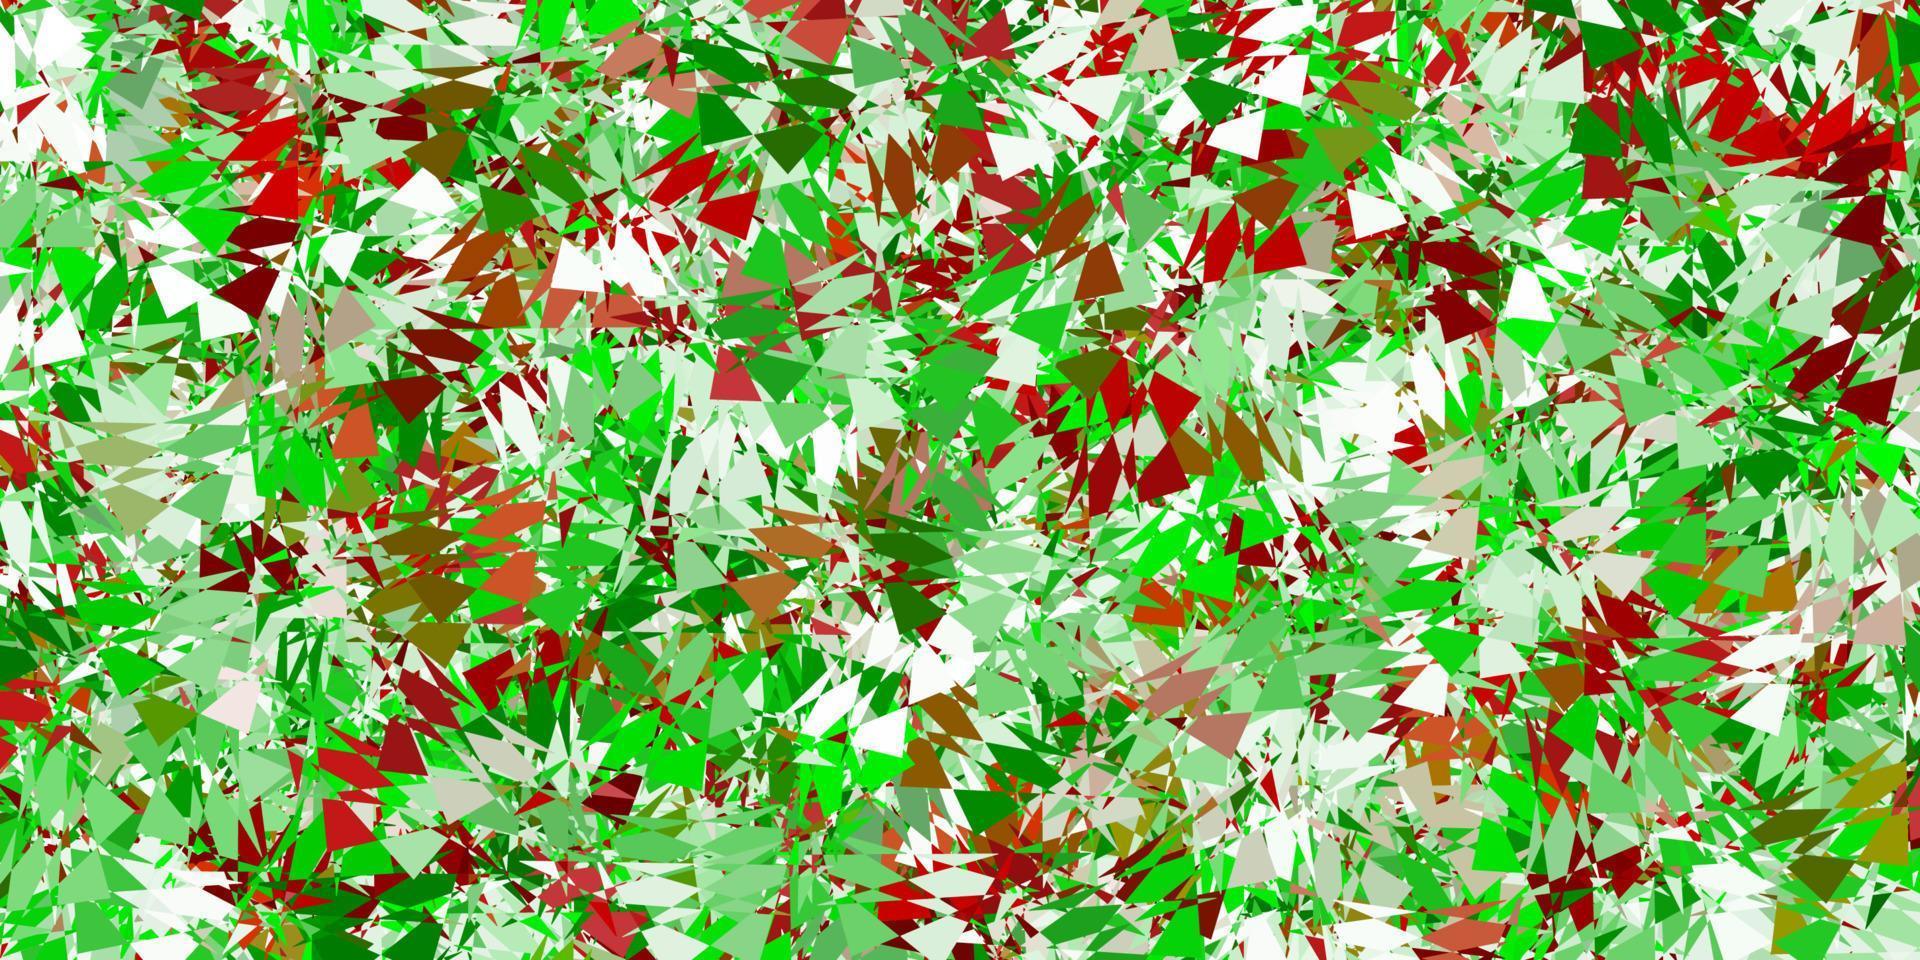 ljusgrönt, rött vektormönster med månghörniga former. vektor